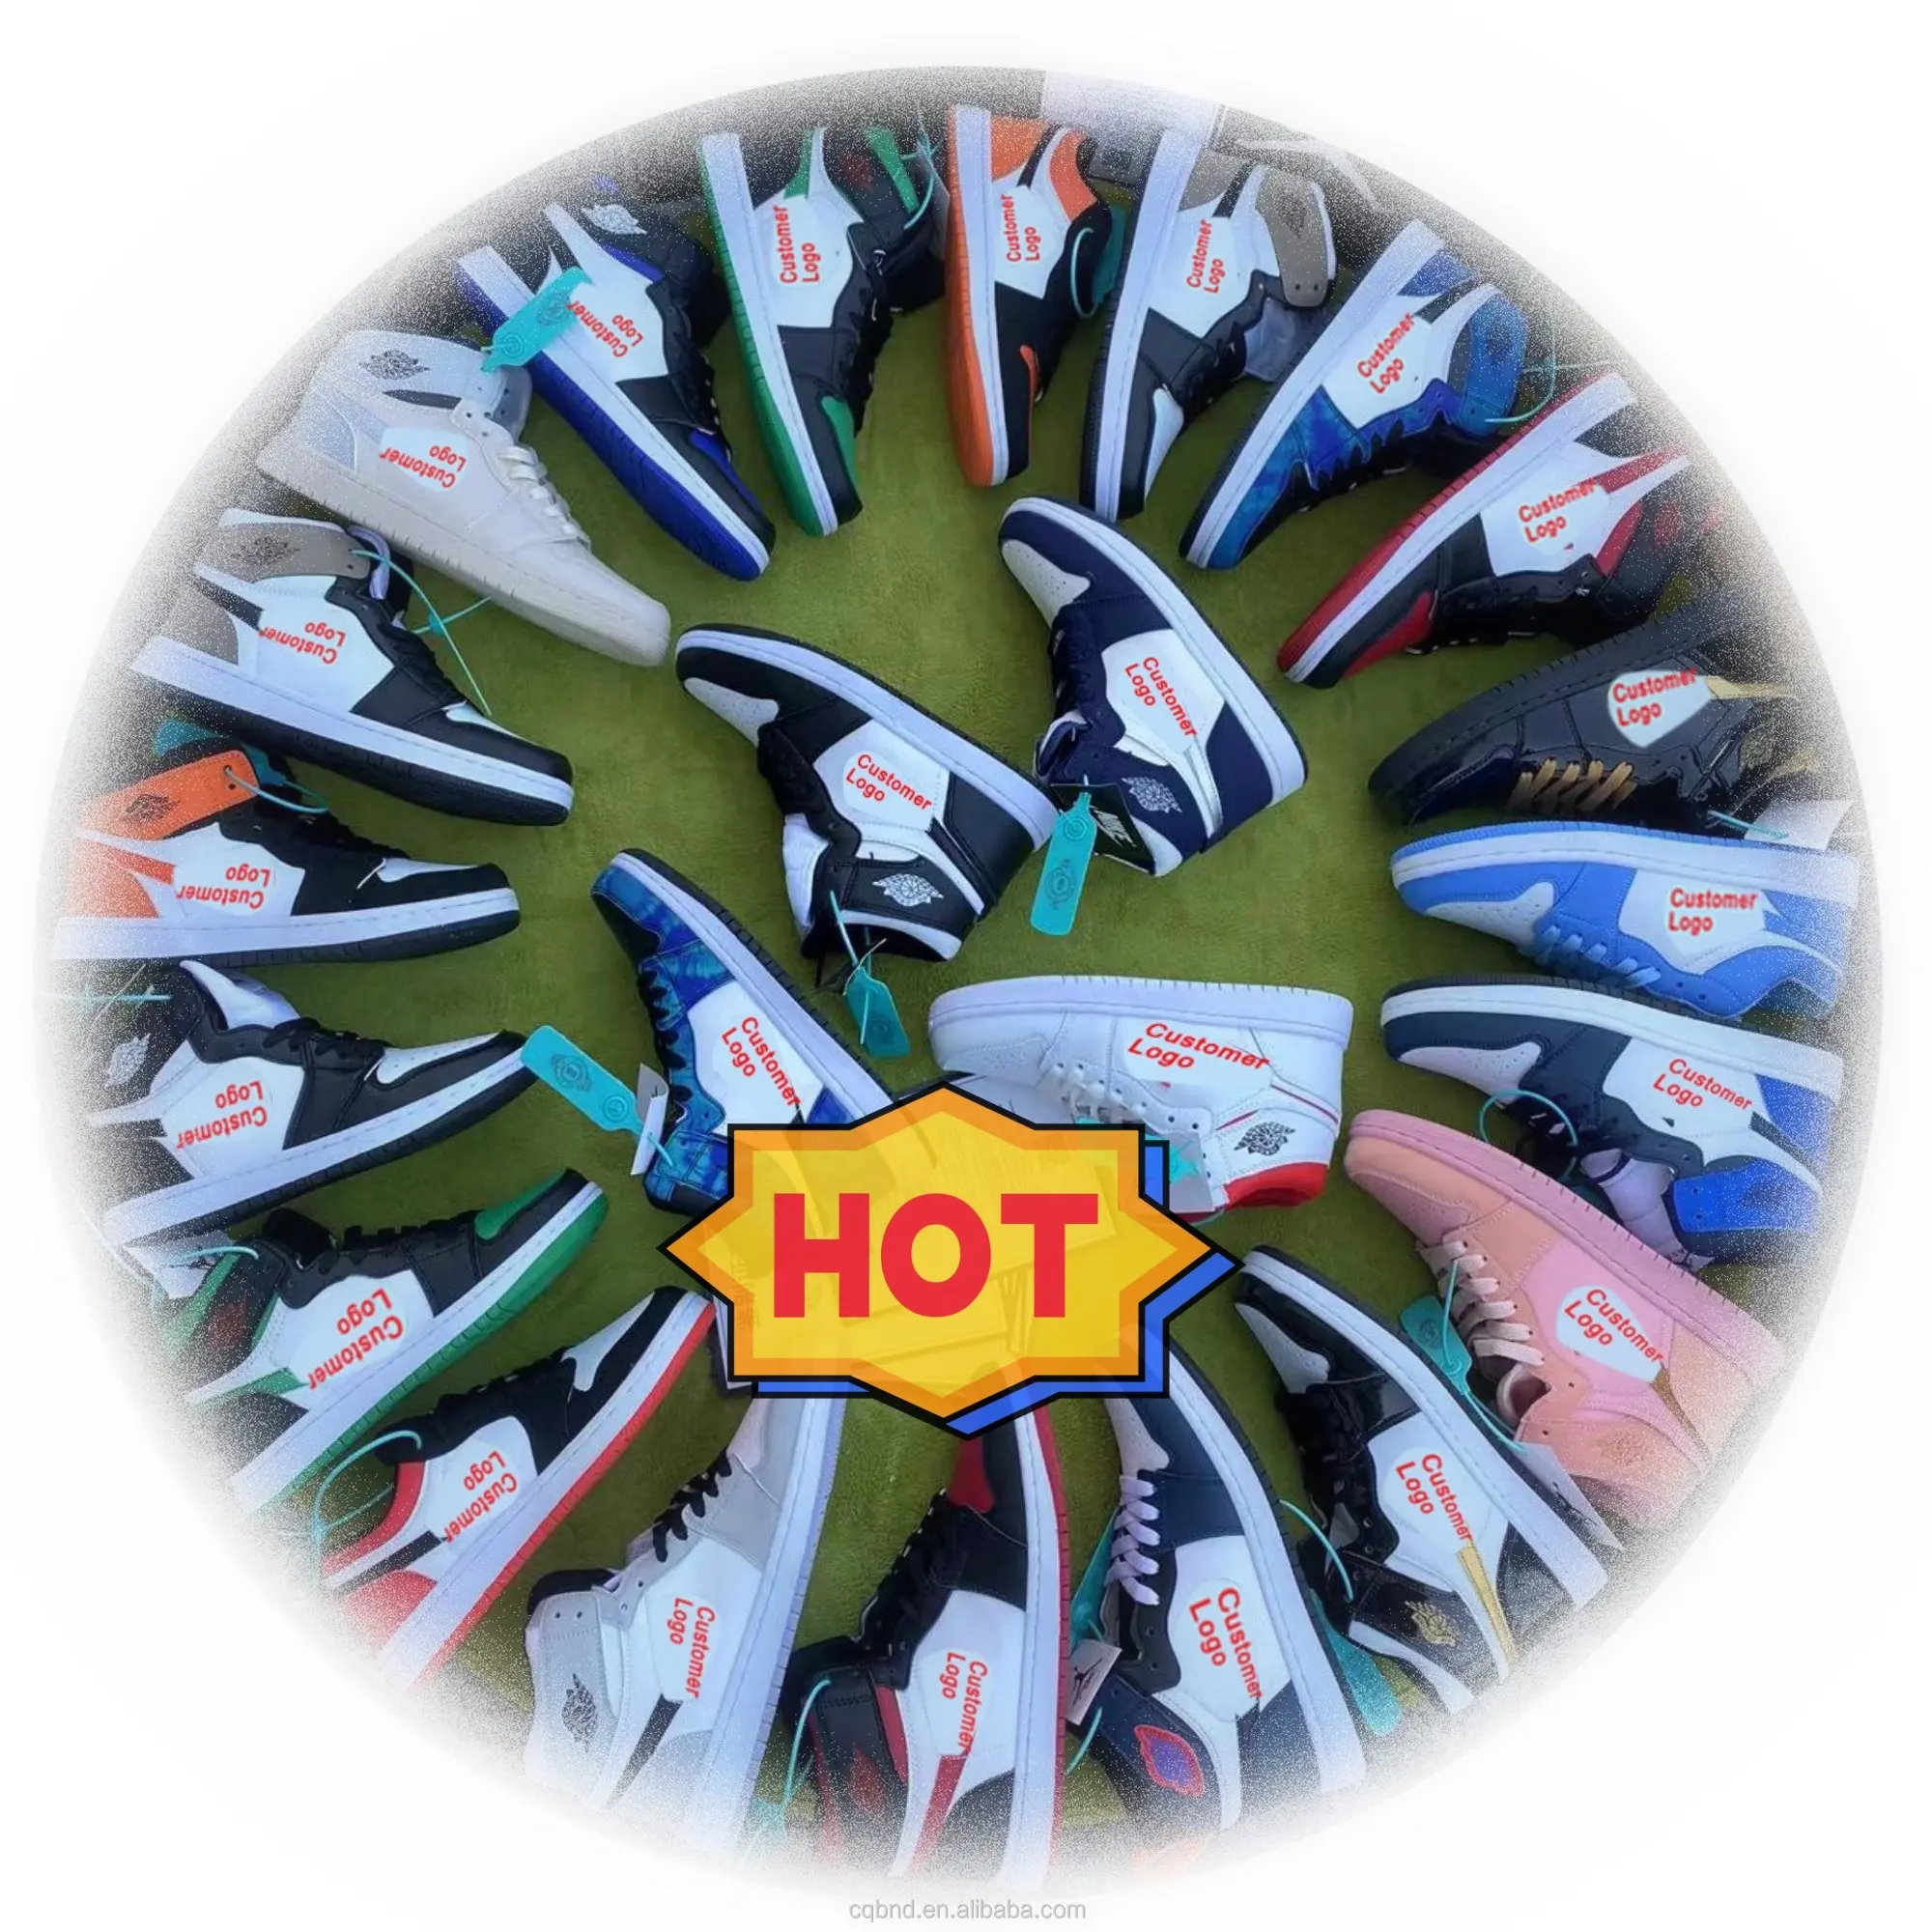 Toplu stok fabrika yeni yüksek kalite ucuz Sneaker rahat spor büyük boy marka özel ayakkabılar vietnam'da yapılan